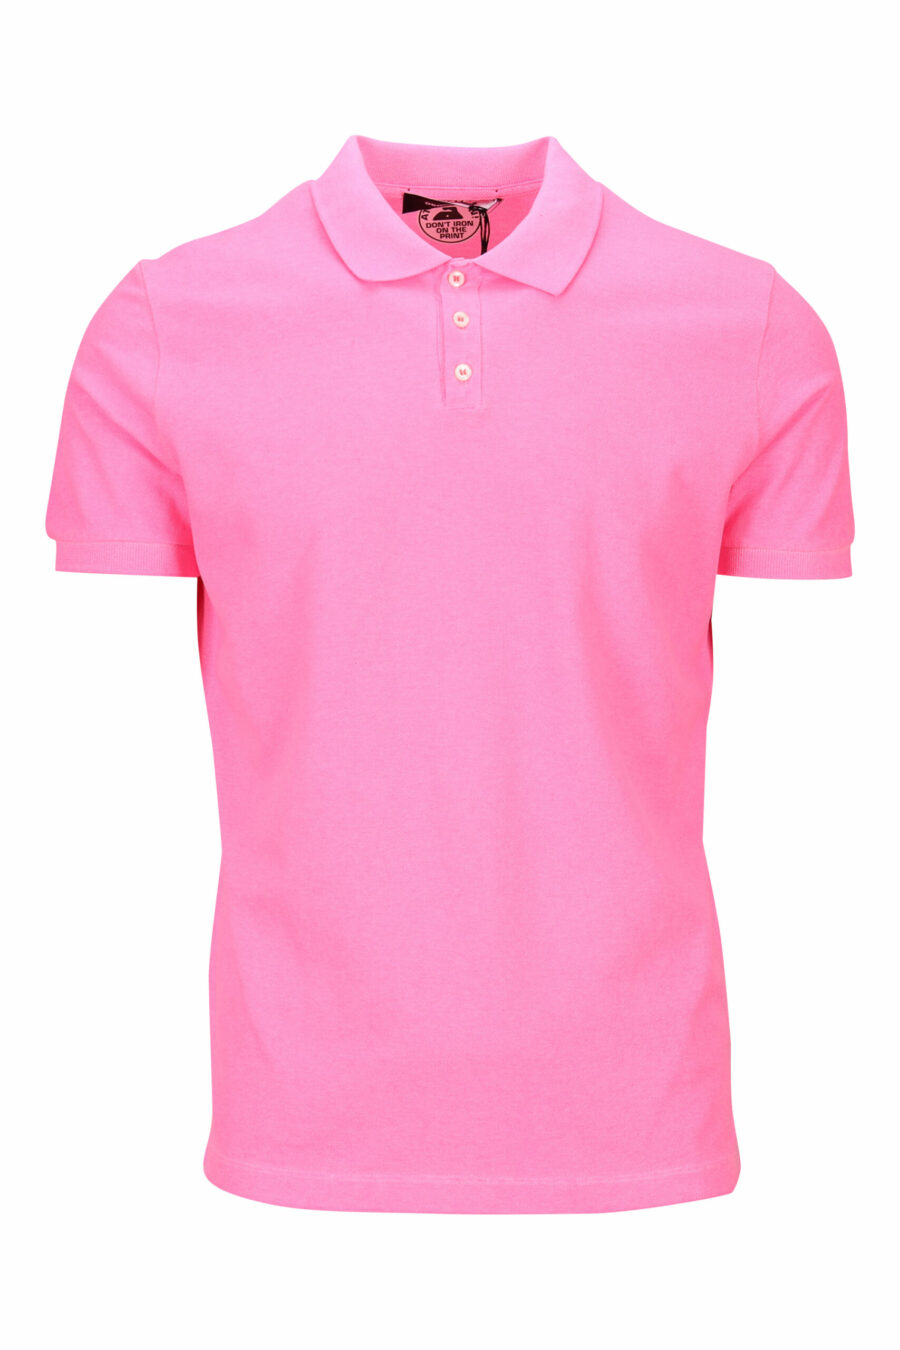 Fuchsiafarbenes "Tennis Fit" Poloshirt mit "Icon" Logo auf dem Rücken - 8054148400859 skaliert